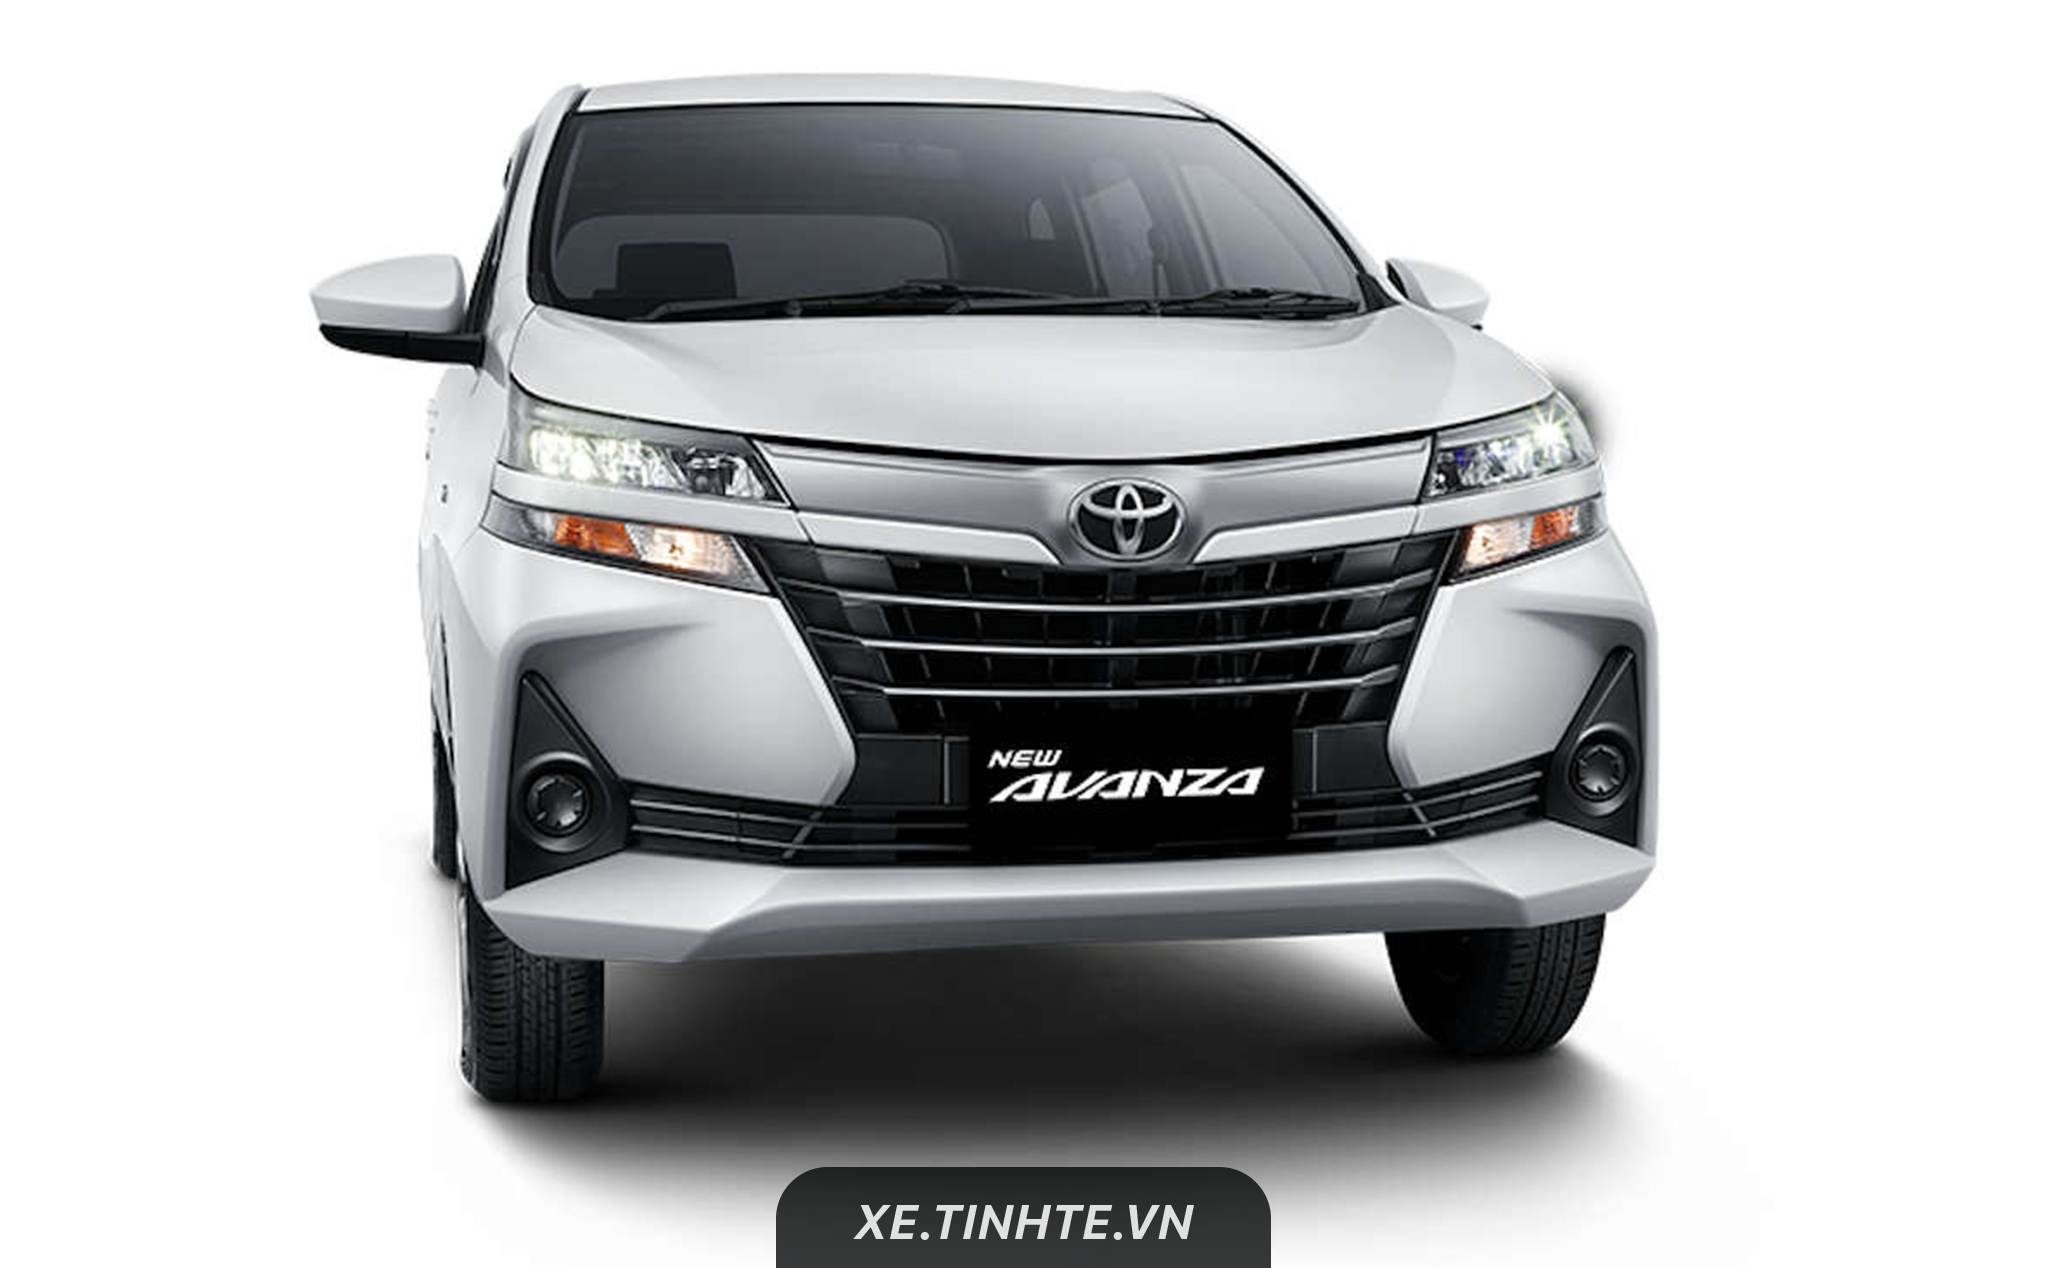 Toyota Avanza nâng cấp giữa đời 2019 có thể sẽ bán ra Việt Nam trong tháng sau